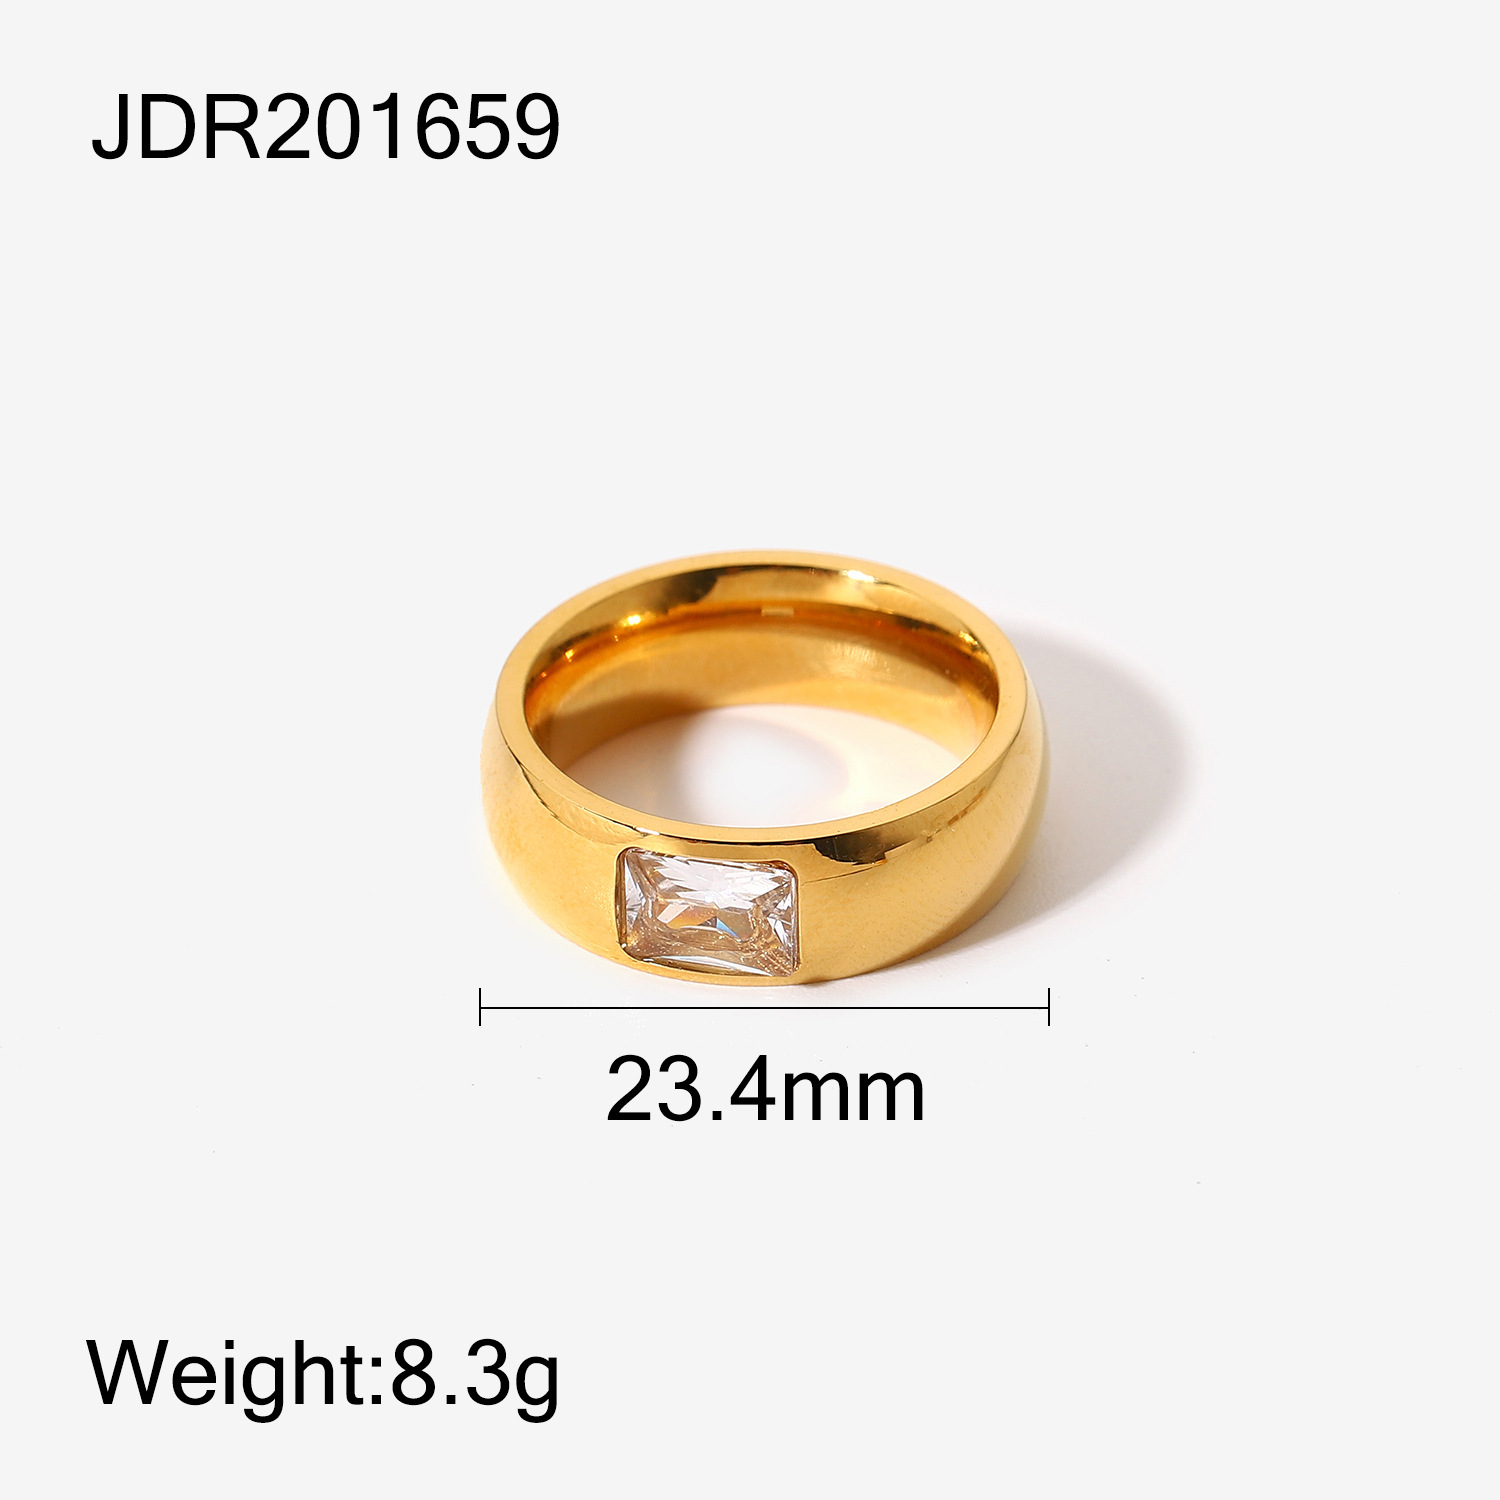 JDR201659